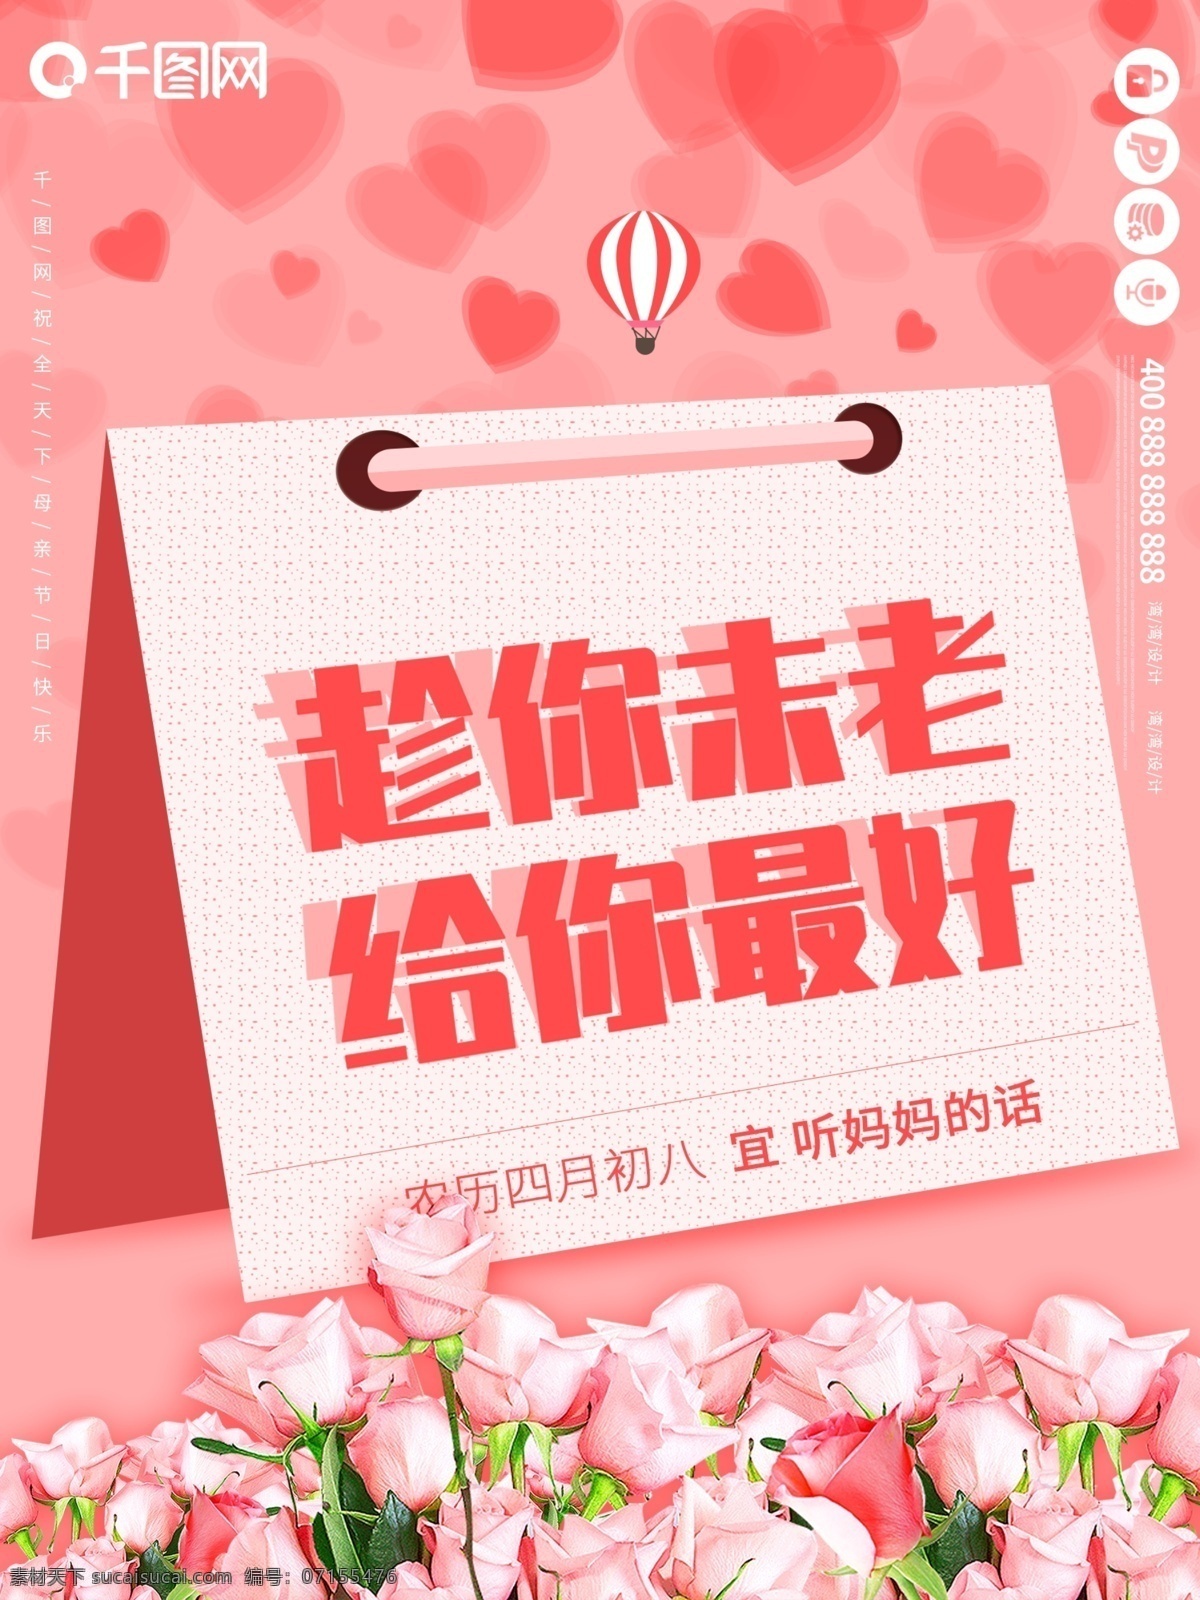 母亲节 文宣 创意 原创 小 清新 粉色 传统节日 海报 文案 大气 小清新 节日